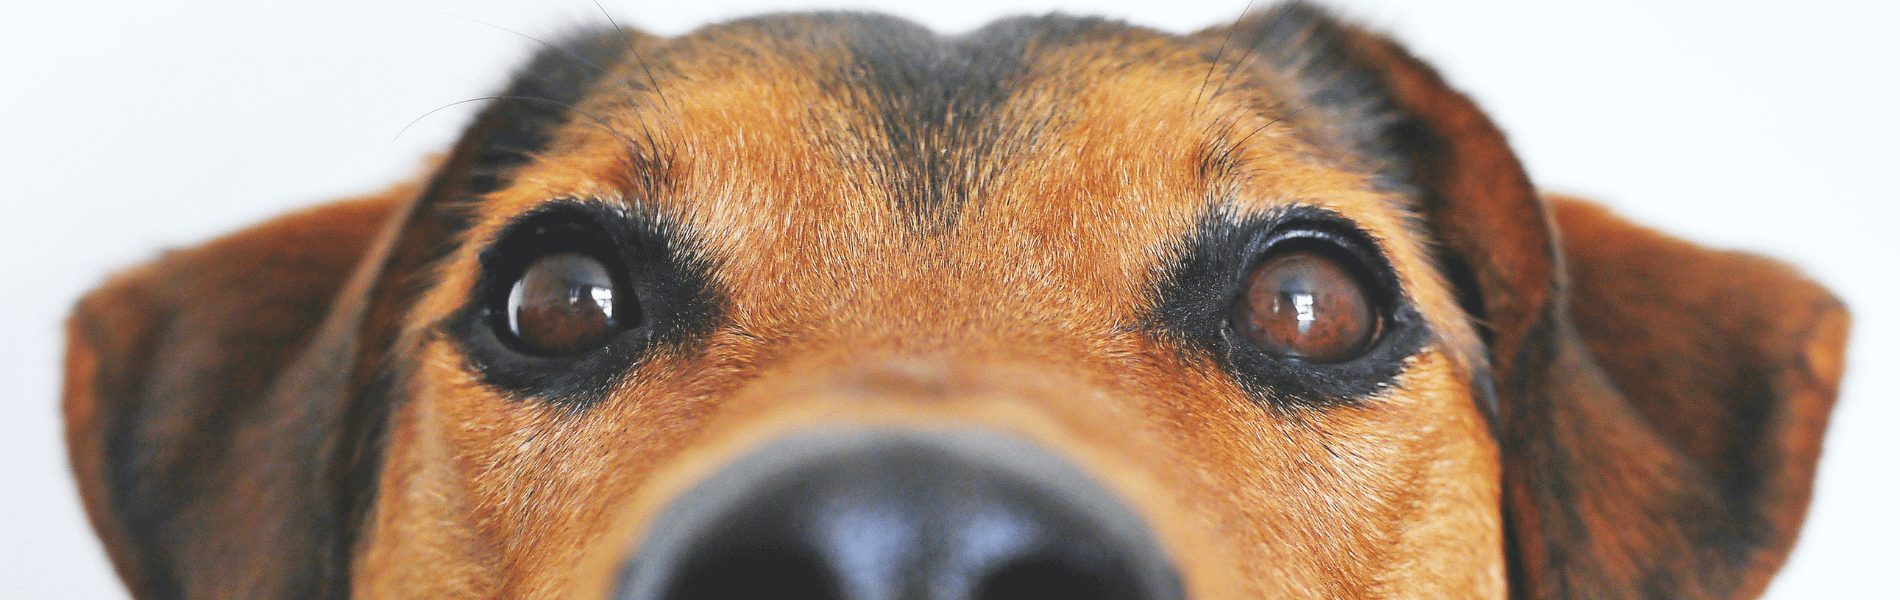 frankincense vs zeolite for canine cancer